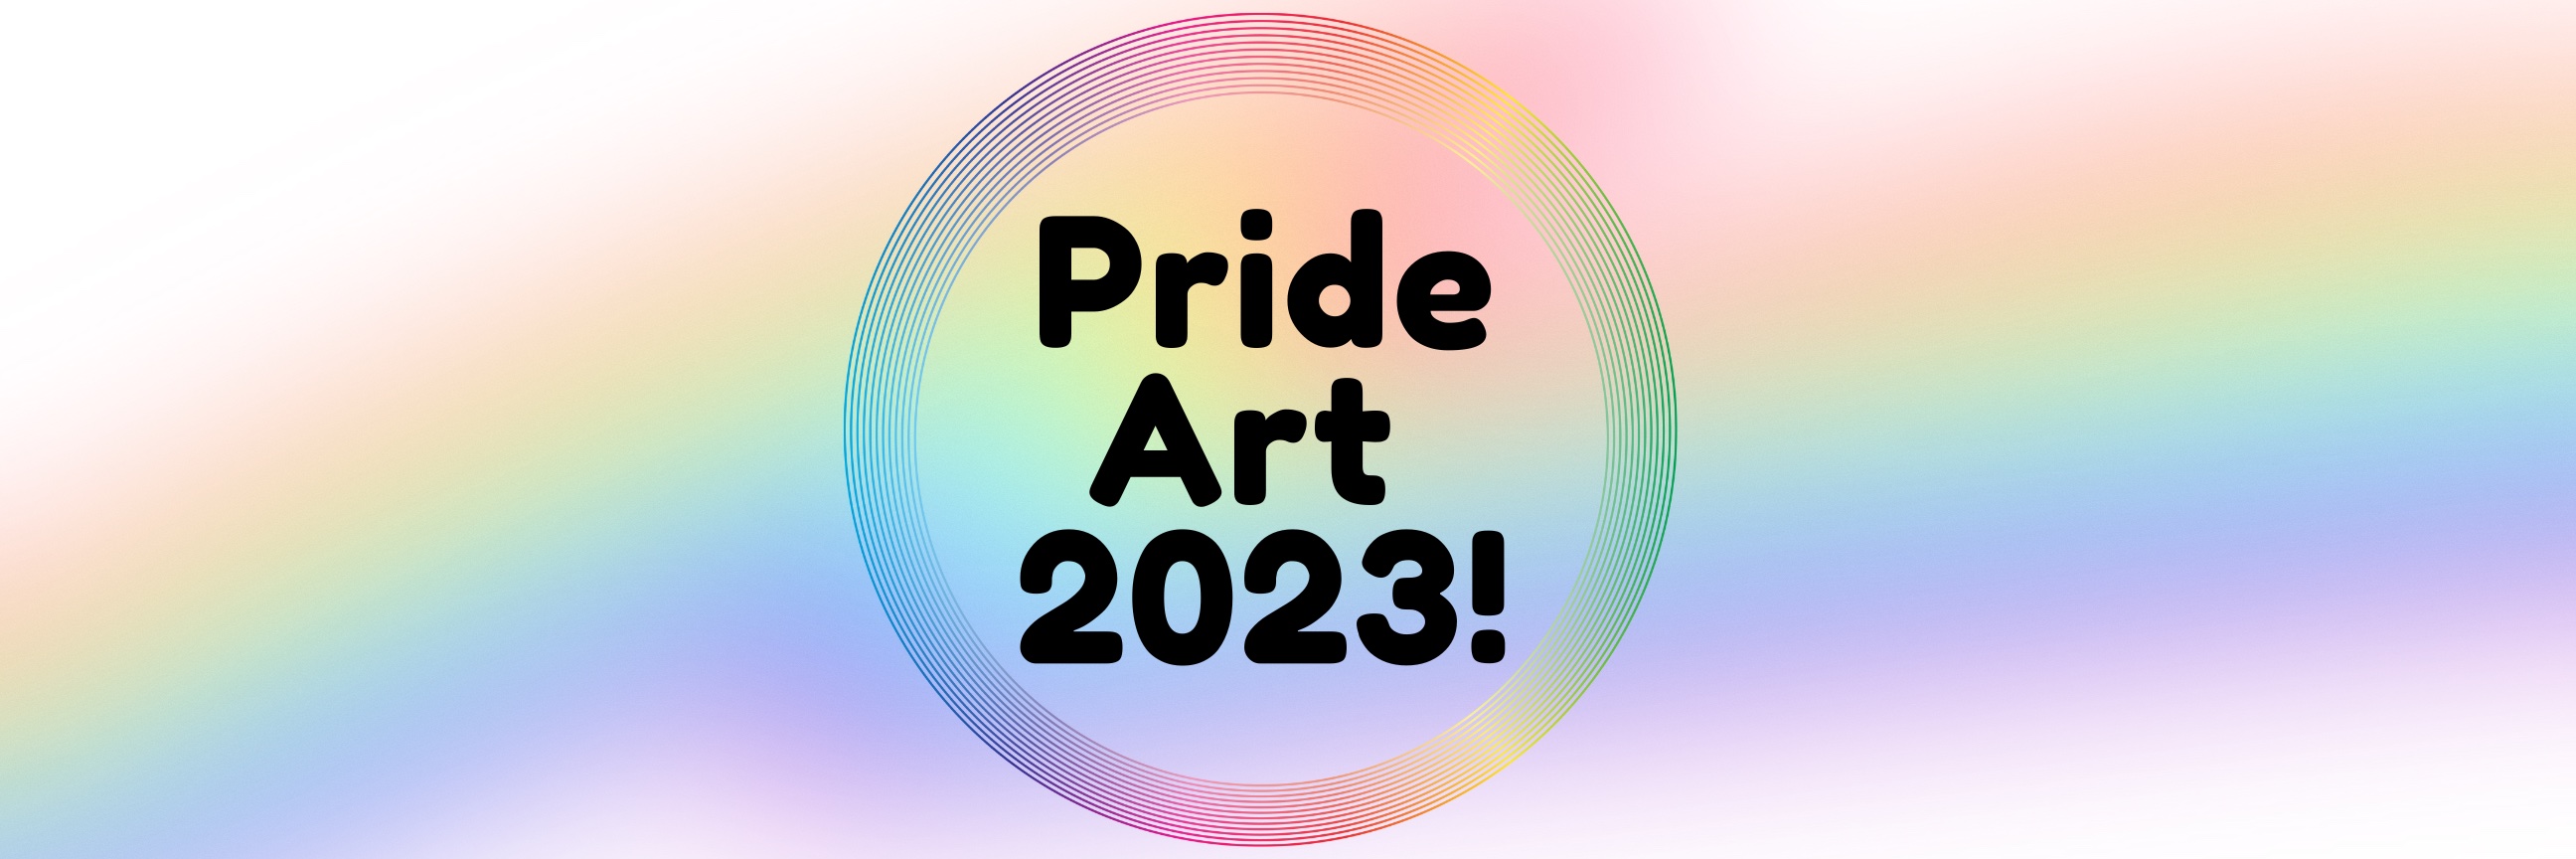 Pride Art 2023!